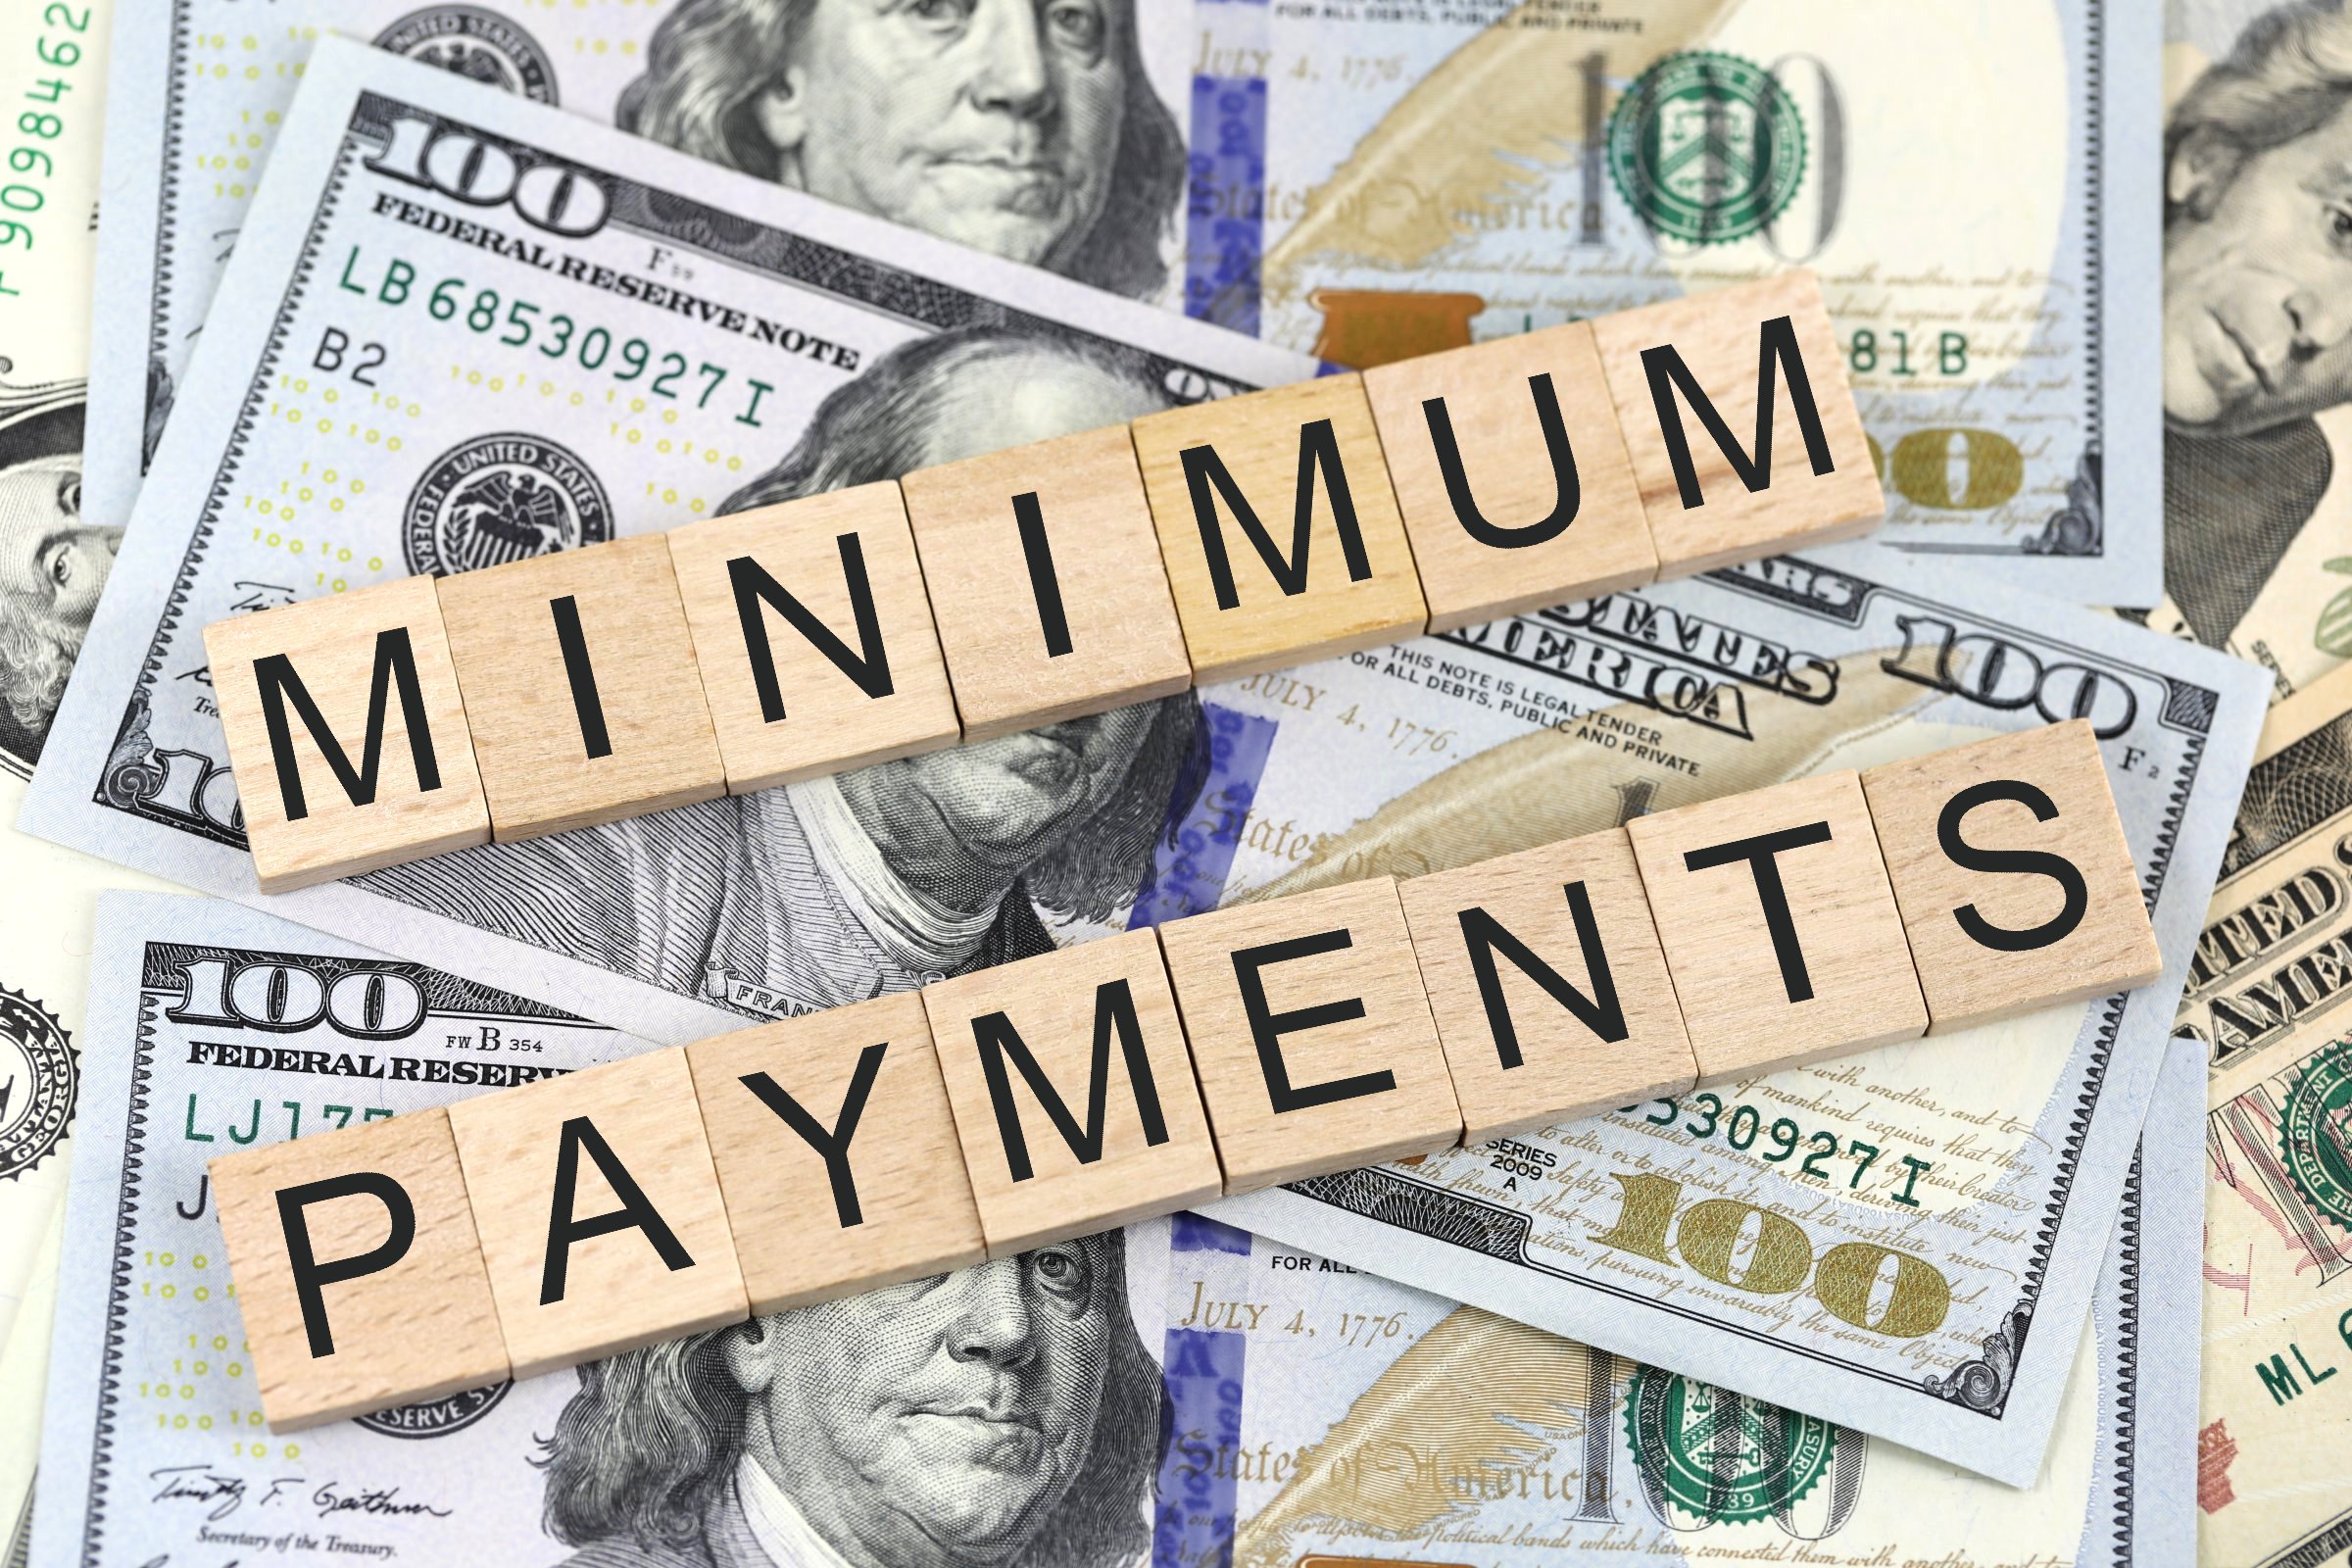 minimum payments